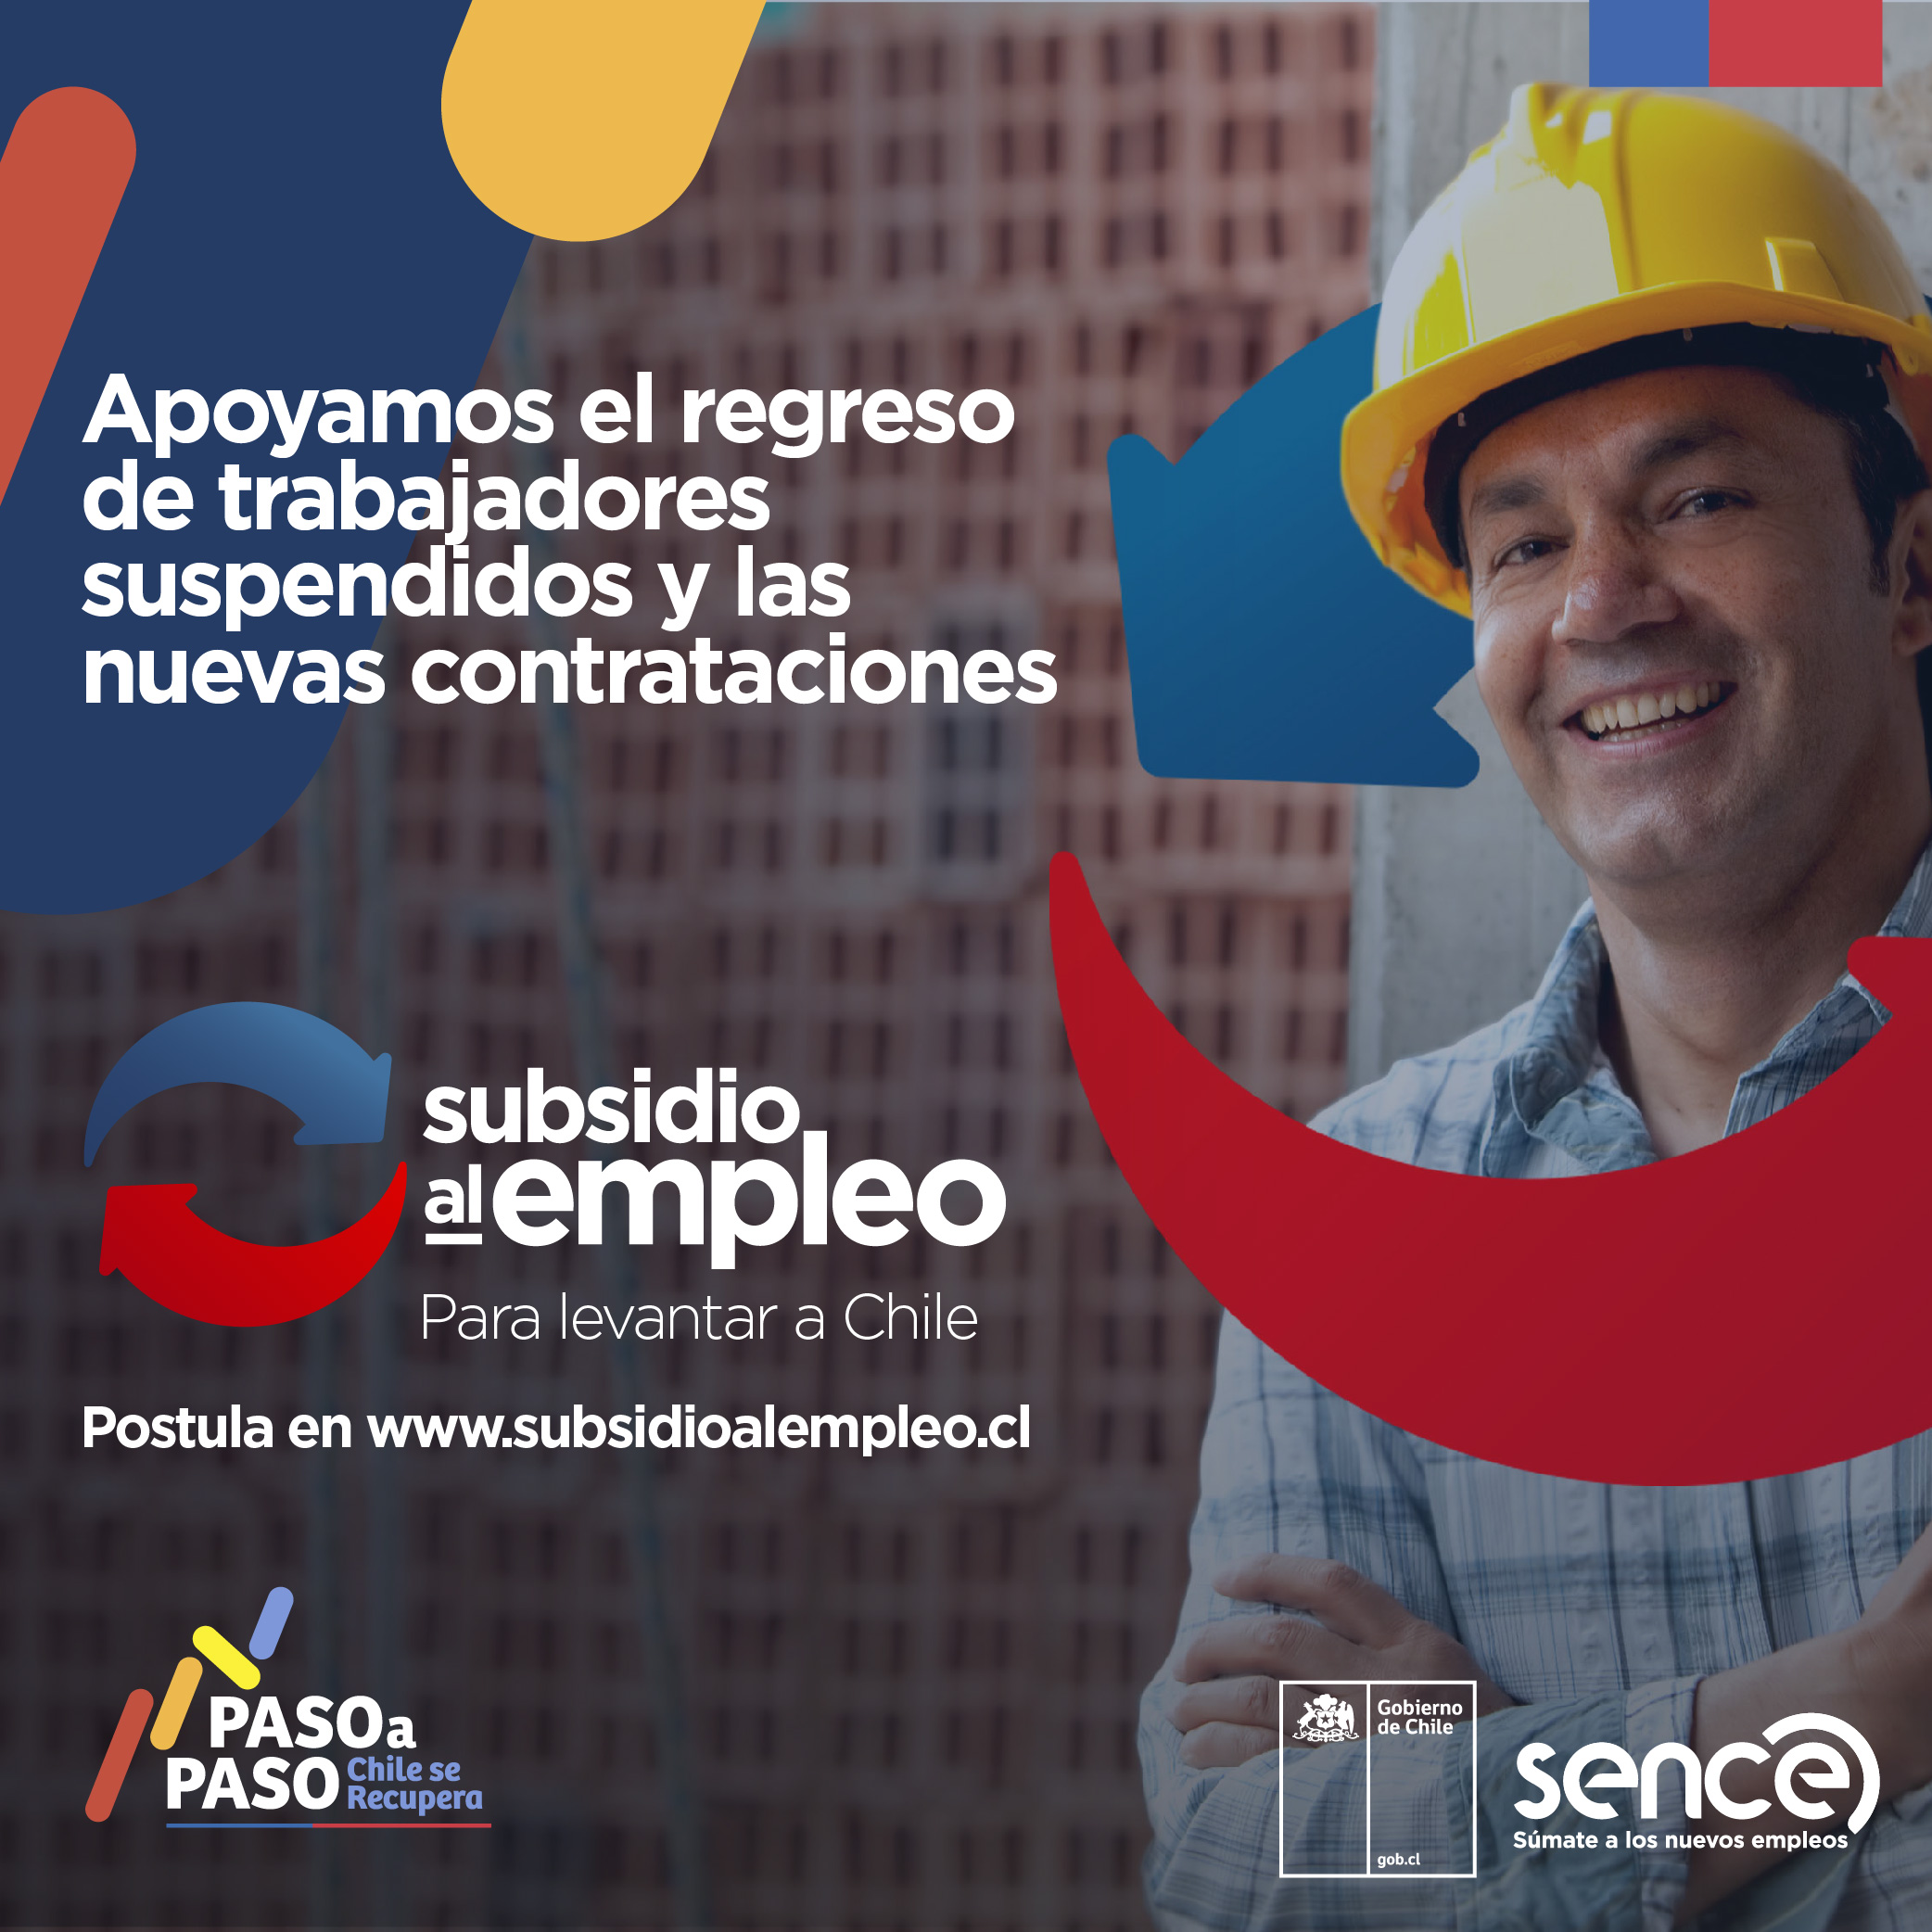  En Magallanes tenemos 775 empresas que han postulado al Subsidio al Empleo beneficiando a más 3000 trabajadores